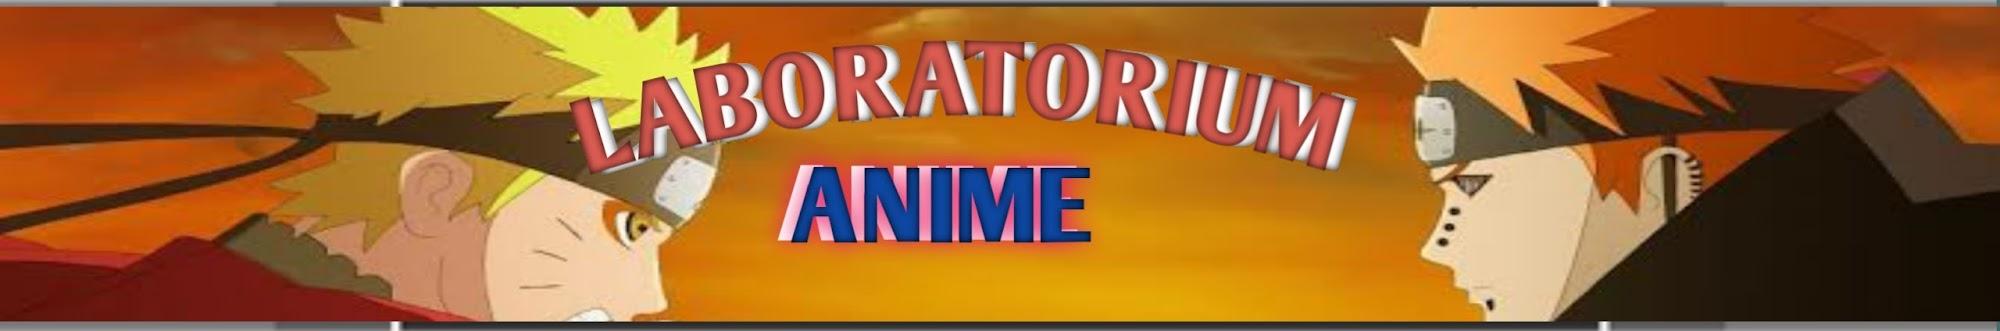 Laboratorium Anime